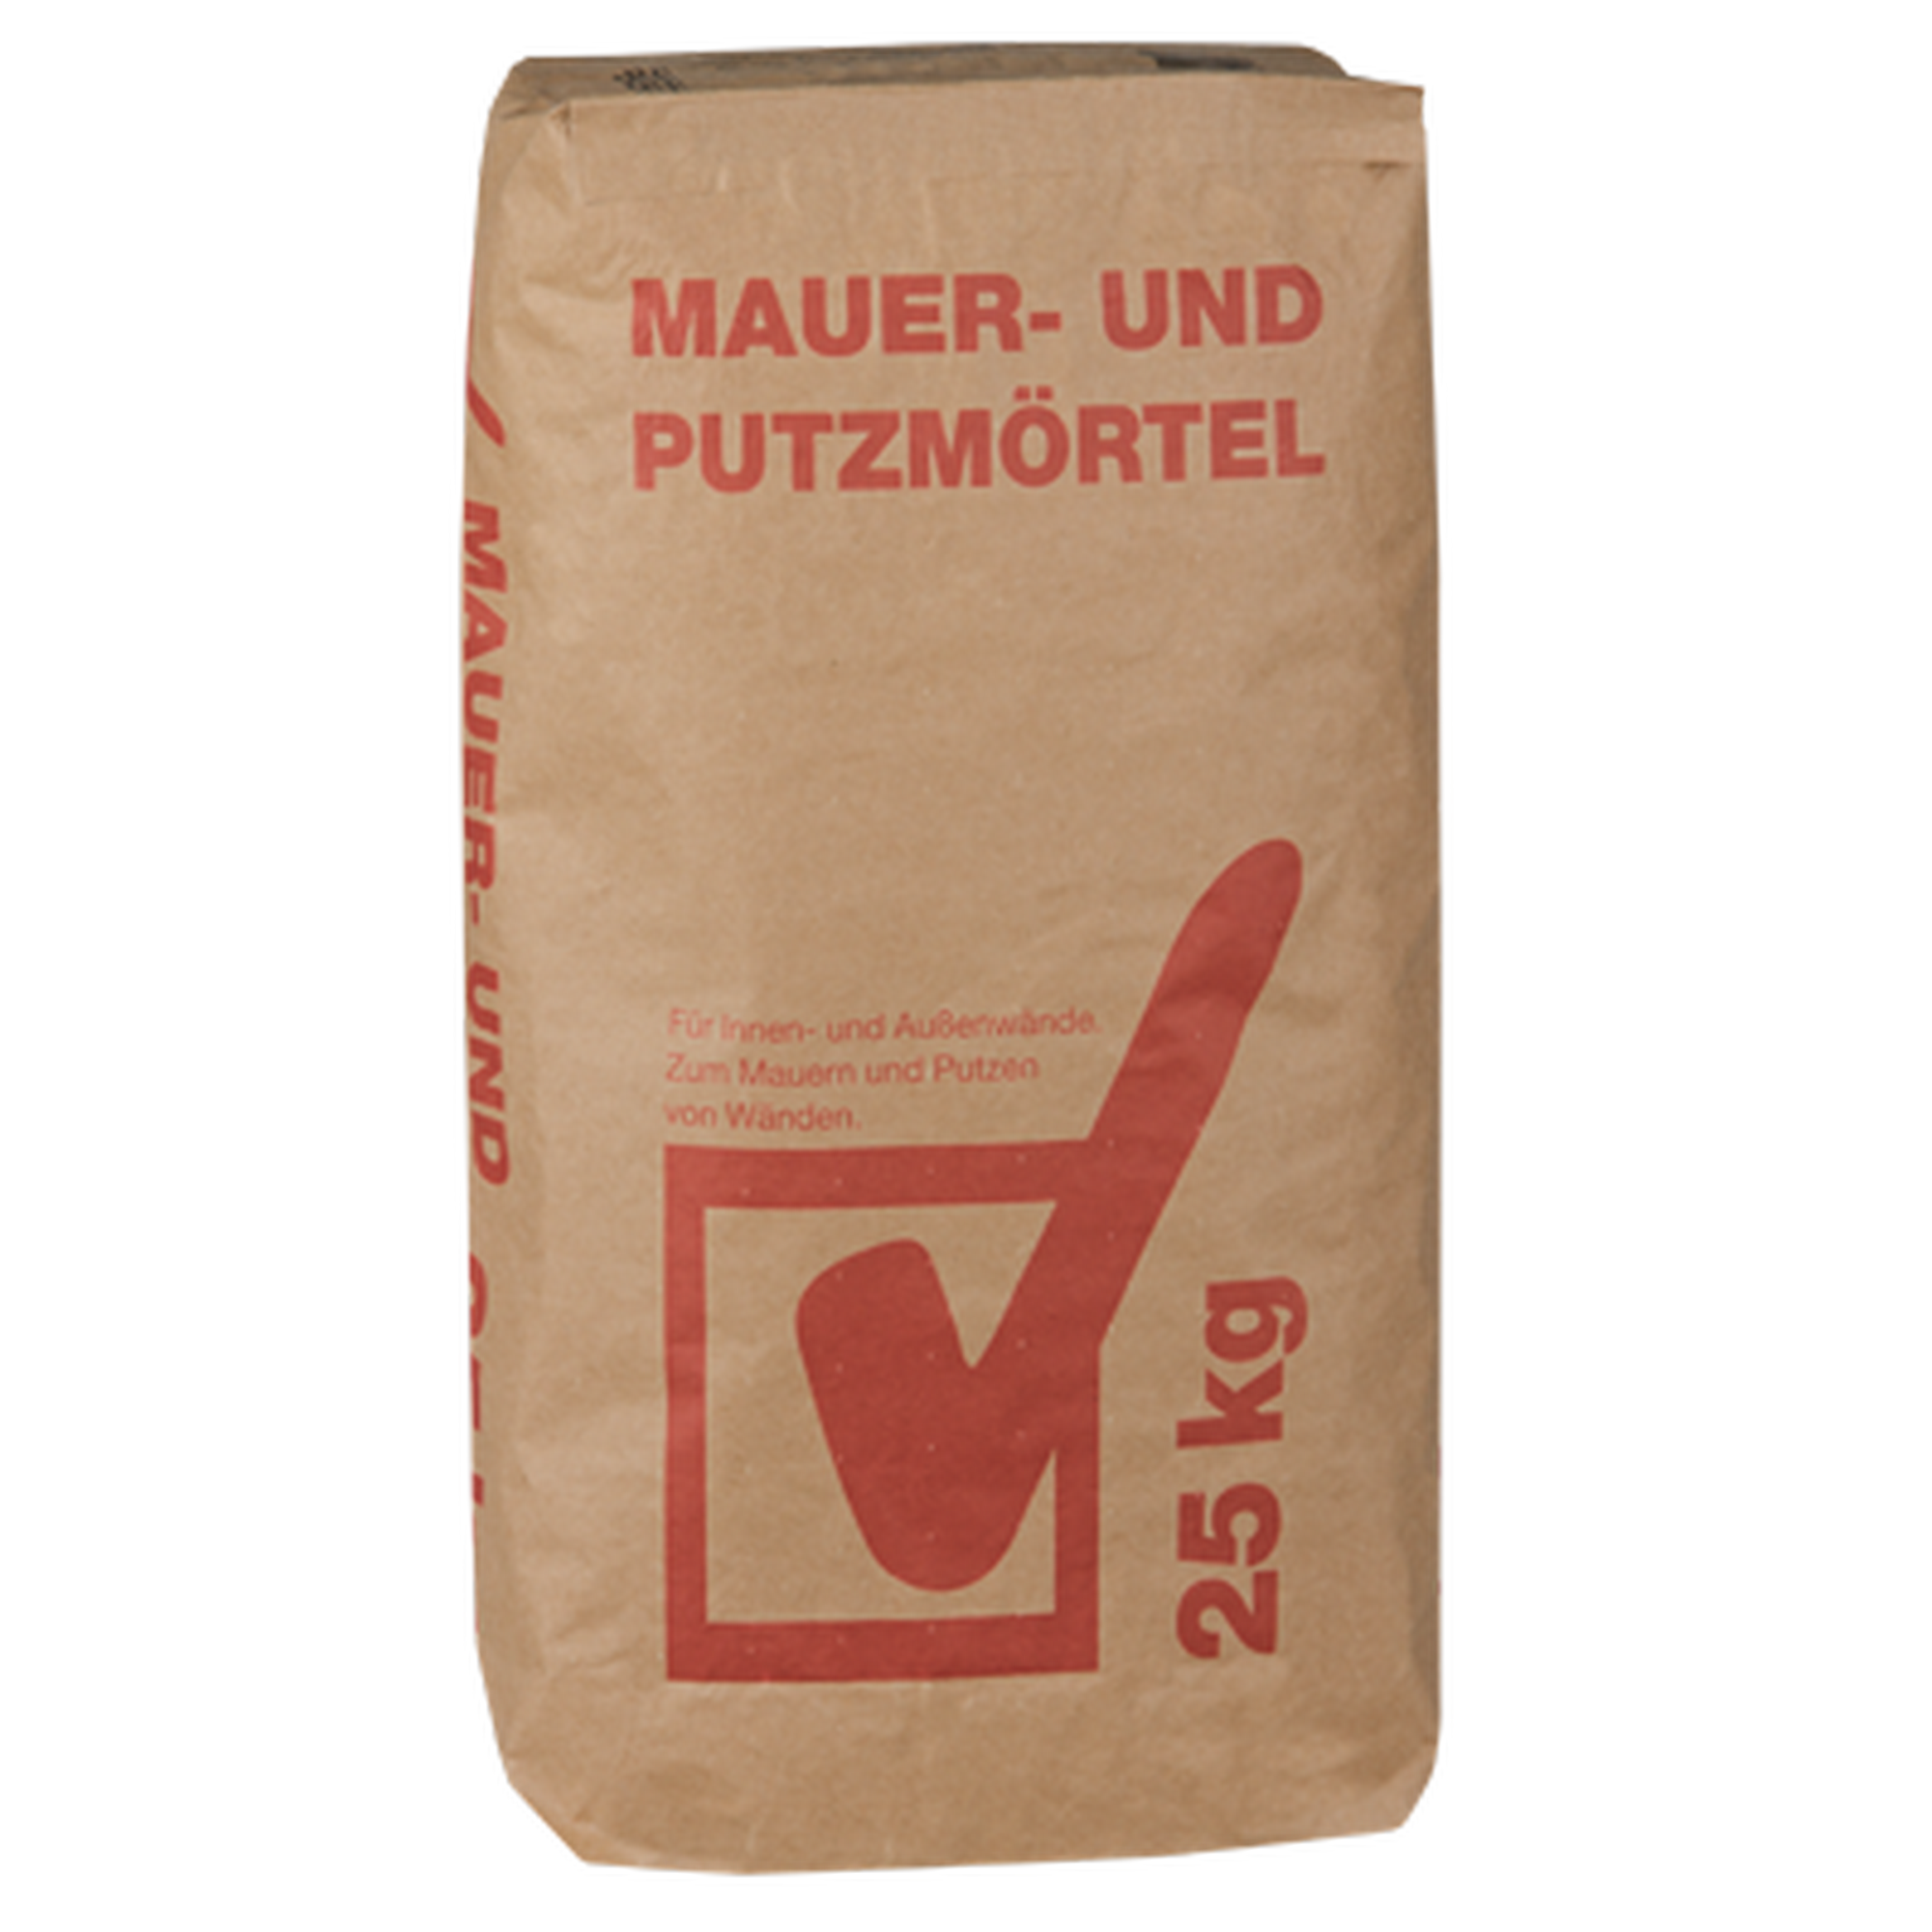 Mauer- und Putzmörtel 25 kg + product picture